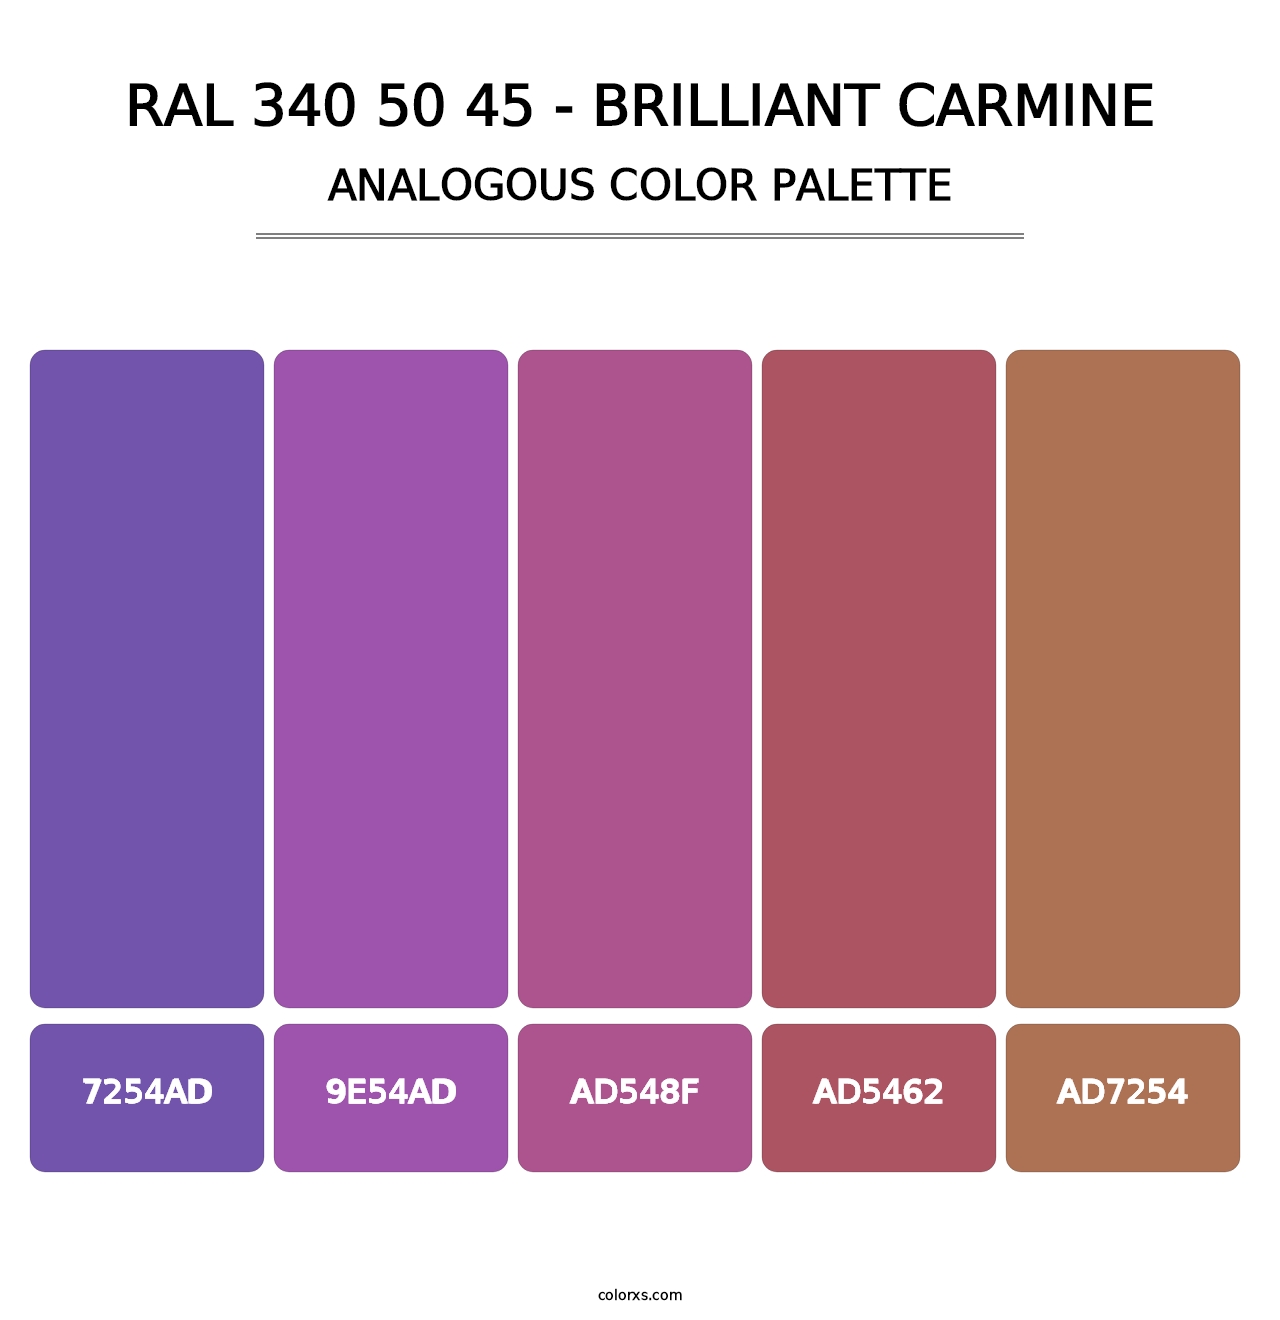 RAL 340 50 45 - Brilliant Carmine - Analogous Color Palette